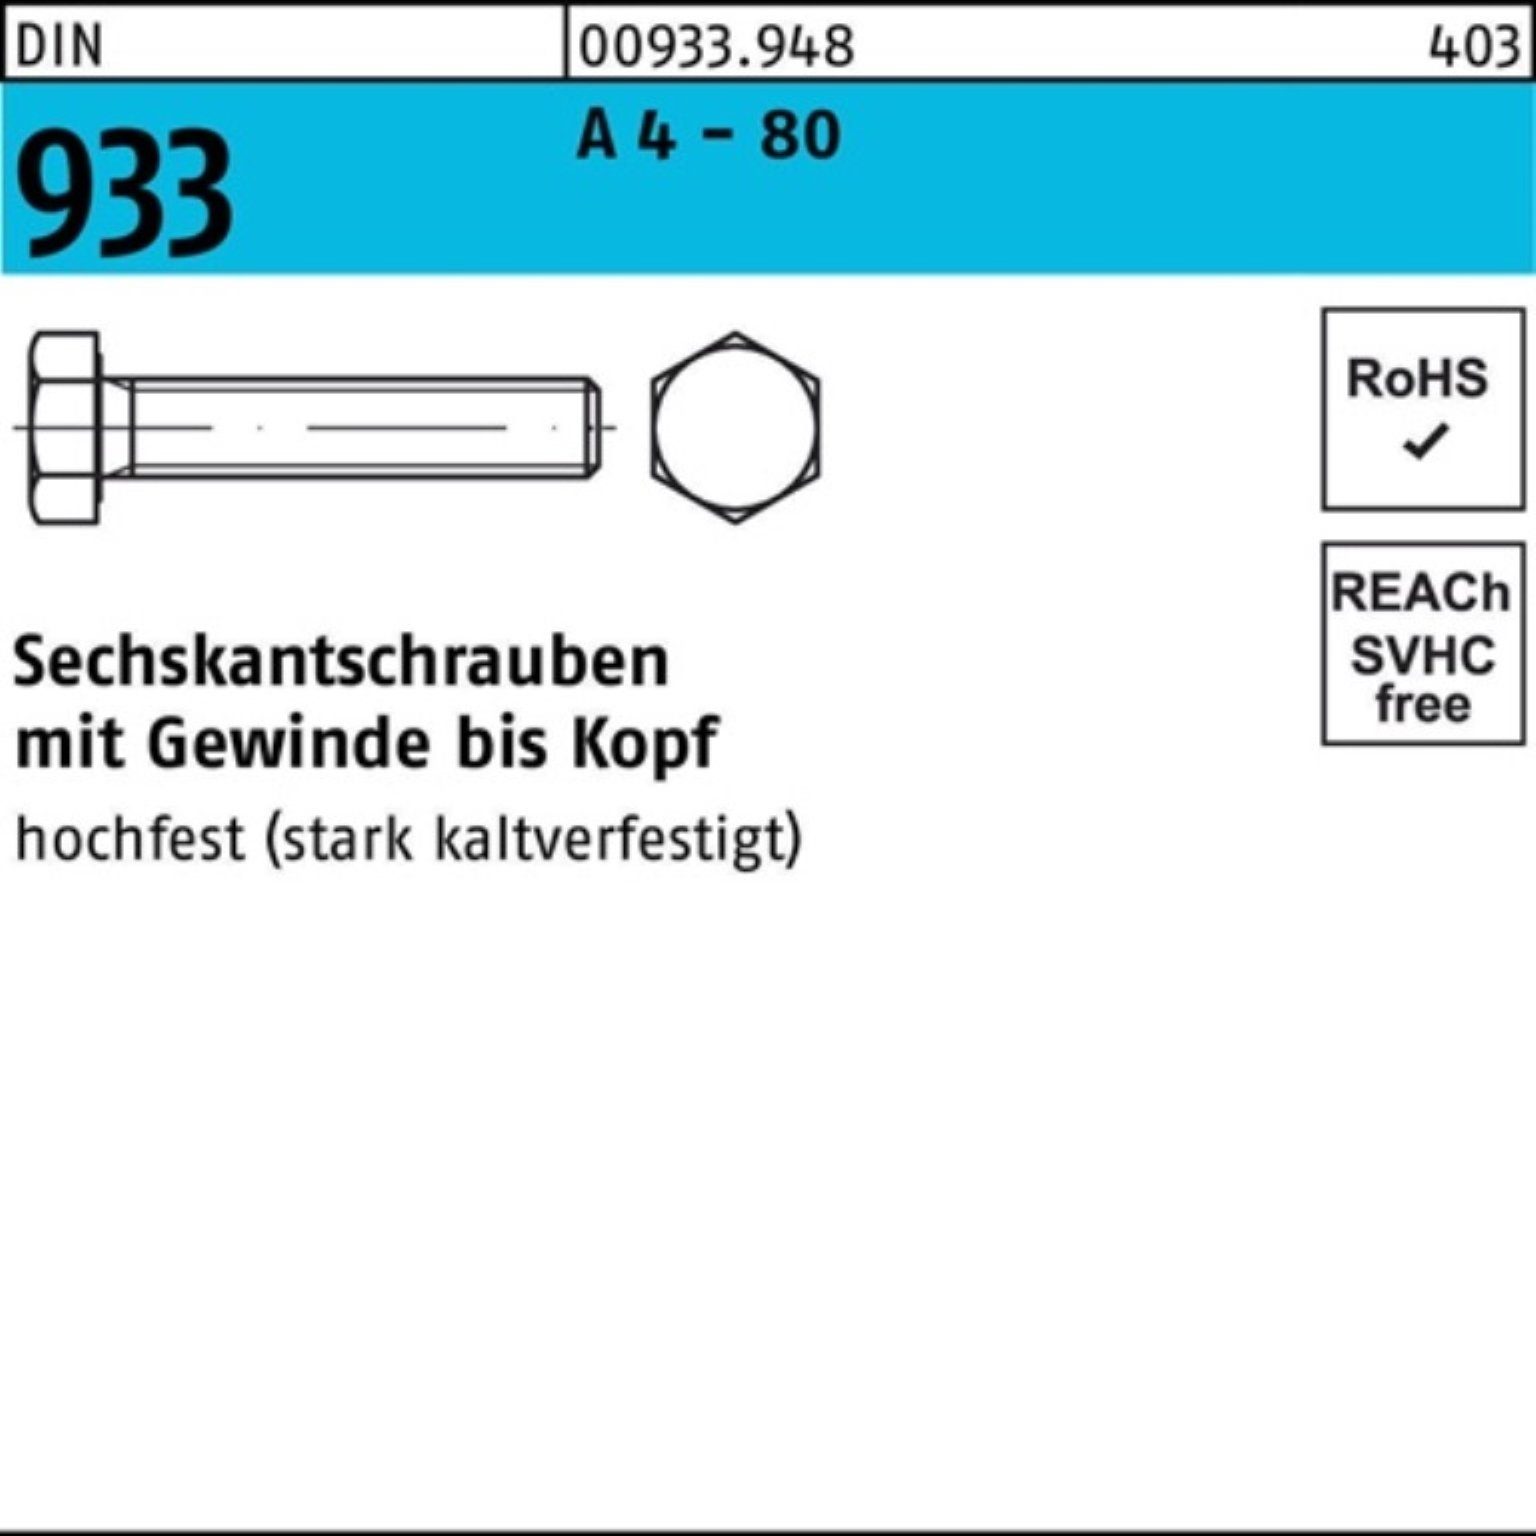 Reyher Sechskantschraube 100er Pack Sechskantschraube DIN 933 VG M8x 150 A 4 - 80 1 Stück DIN